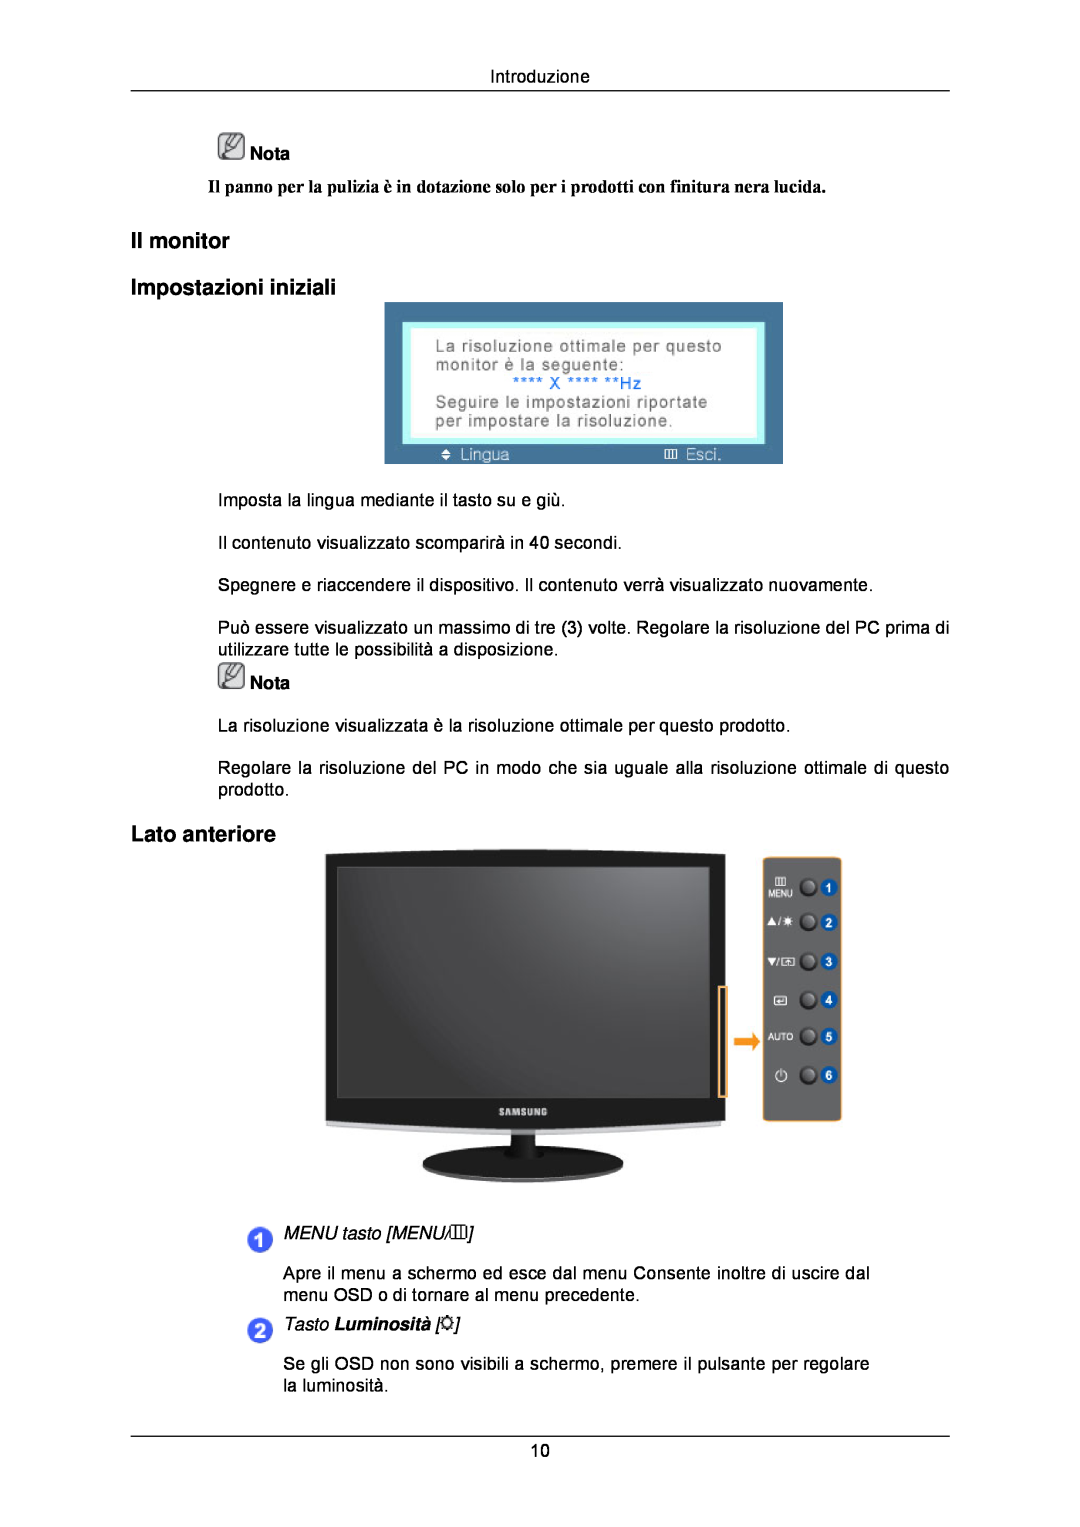 Samsung LS24CMKKFV/EN manual Il monitor Impostazioni iniziali, Lato anteriore, Tasto Luminosità 